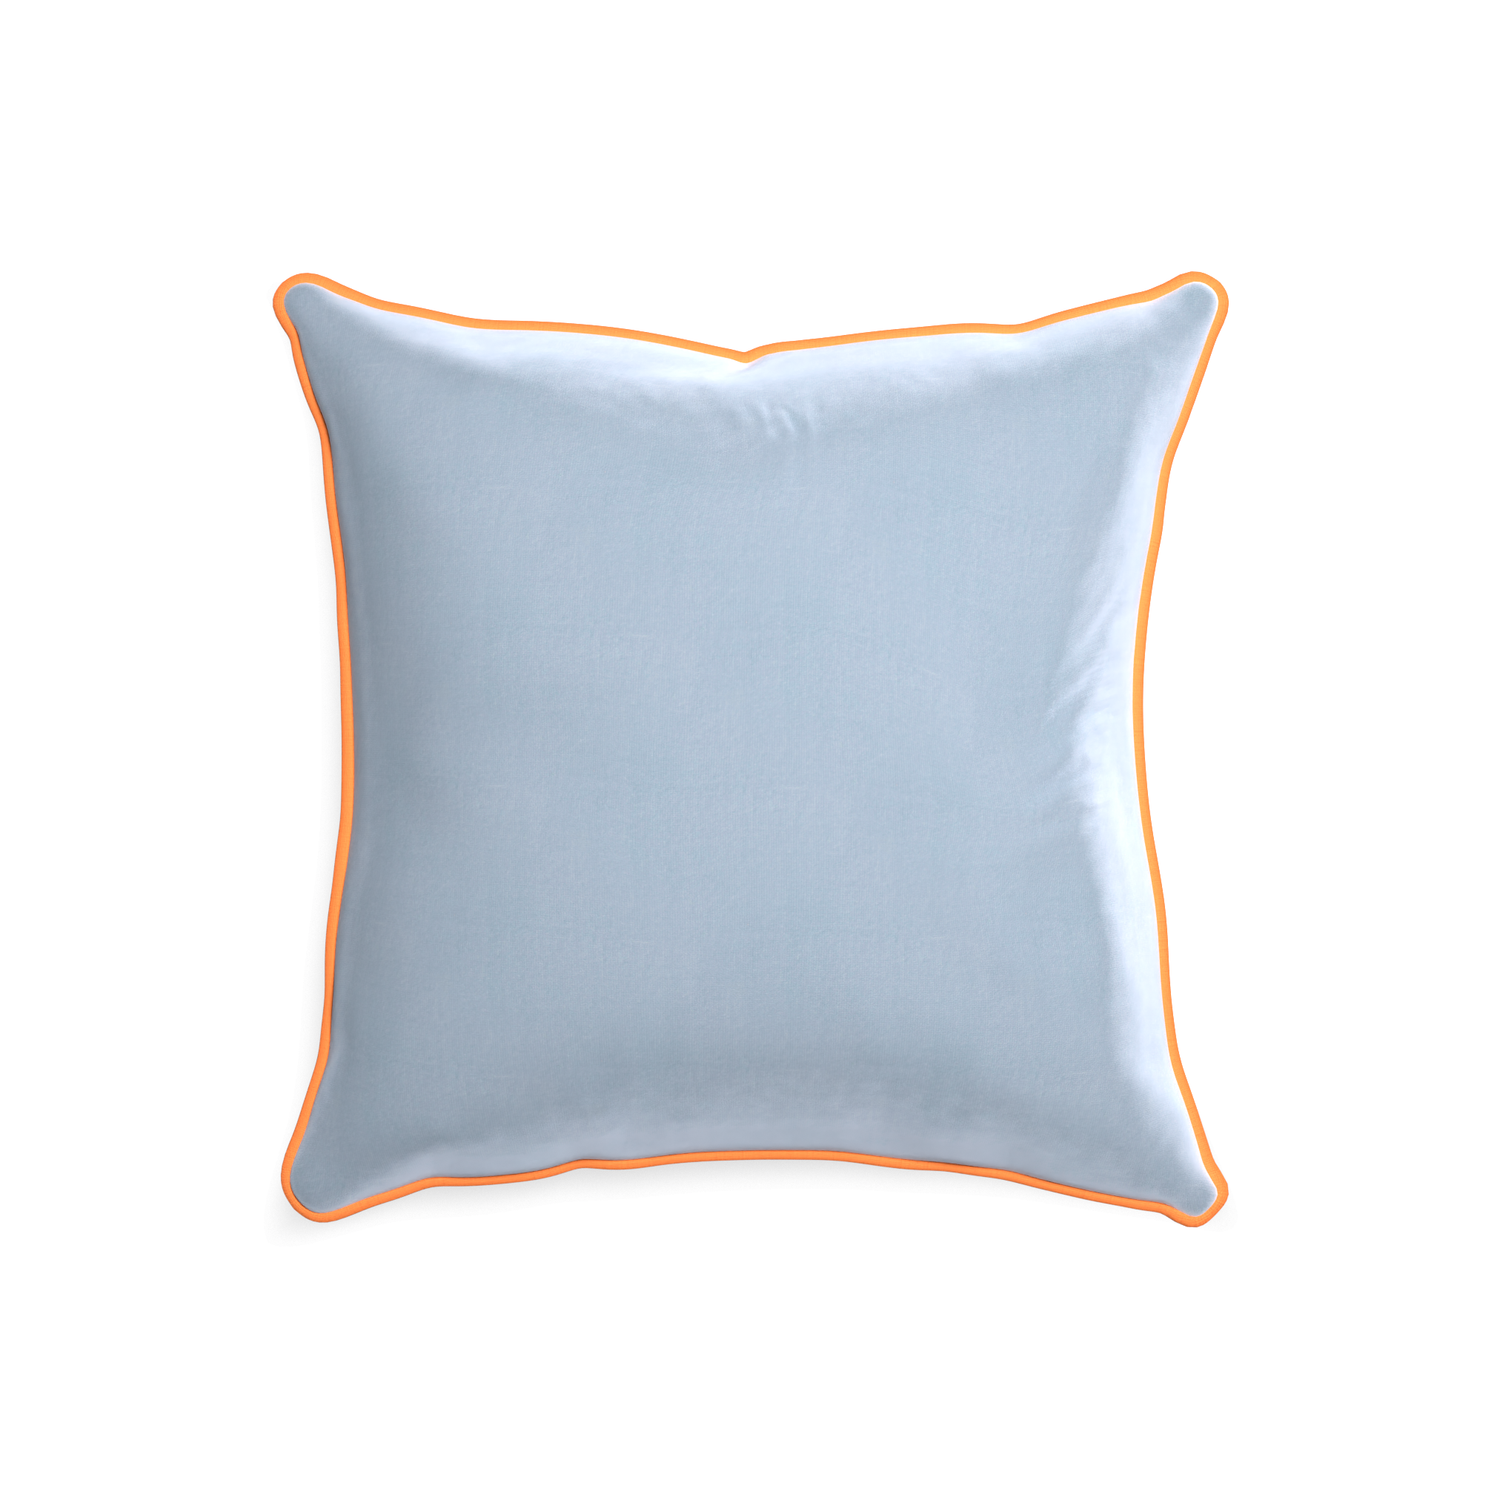 square light blue velvet pillow with orange piping 